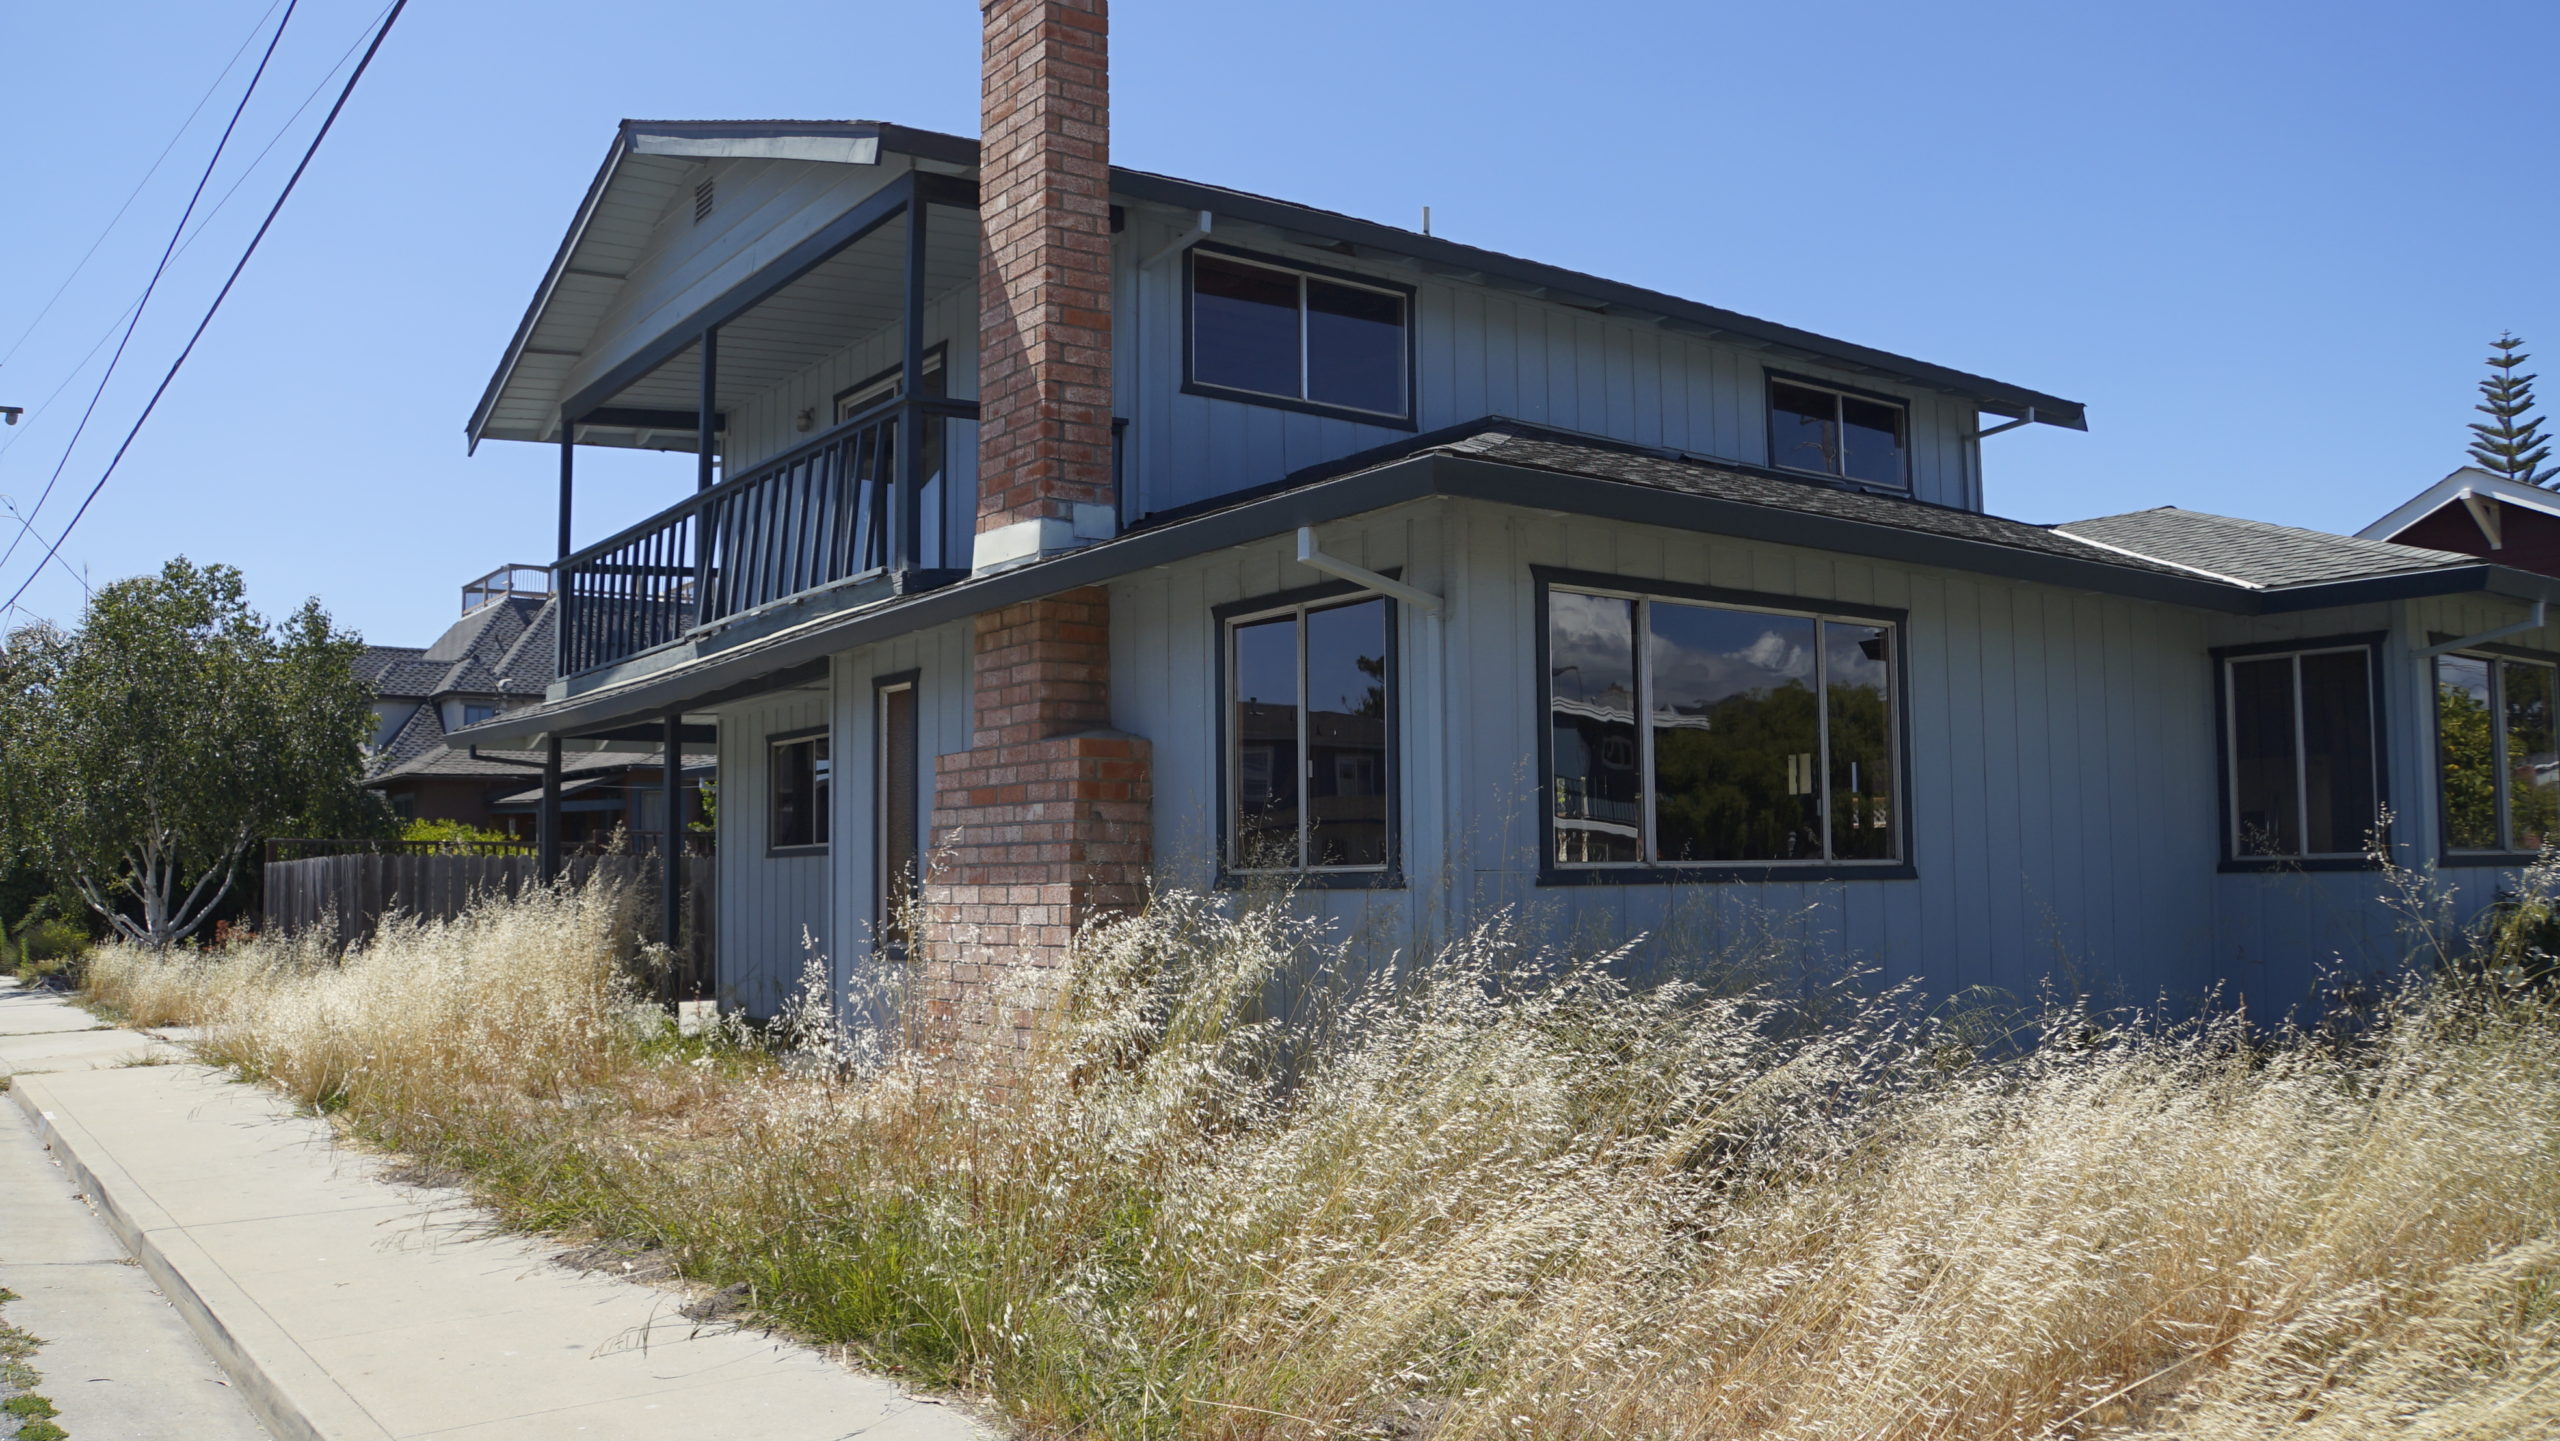 Una casa de cuatro dormitorios cerca de West Cliff Drive, en Santa Cruz, permanece vacía en junio, después de haber sido vendida por 2,3 millones de dólares en noviembre. Casas en construcción activa estarían exentos de un impuesto propuesto sobre las viviendas vacías. (Kara Meyberg Guzmán - Santa Cruz Local)